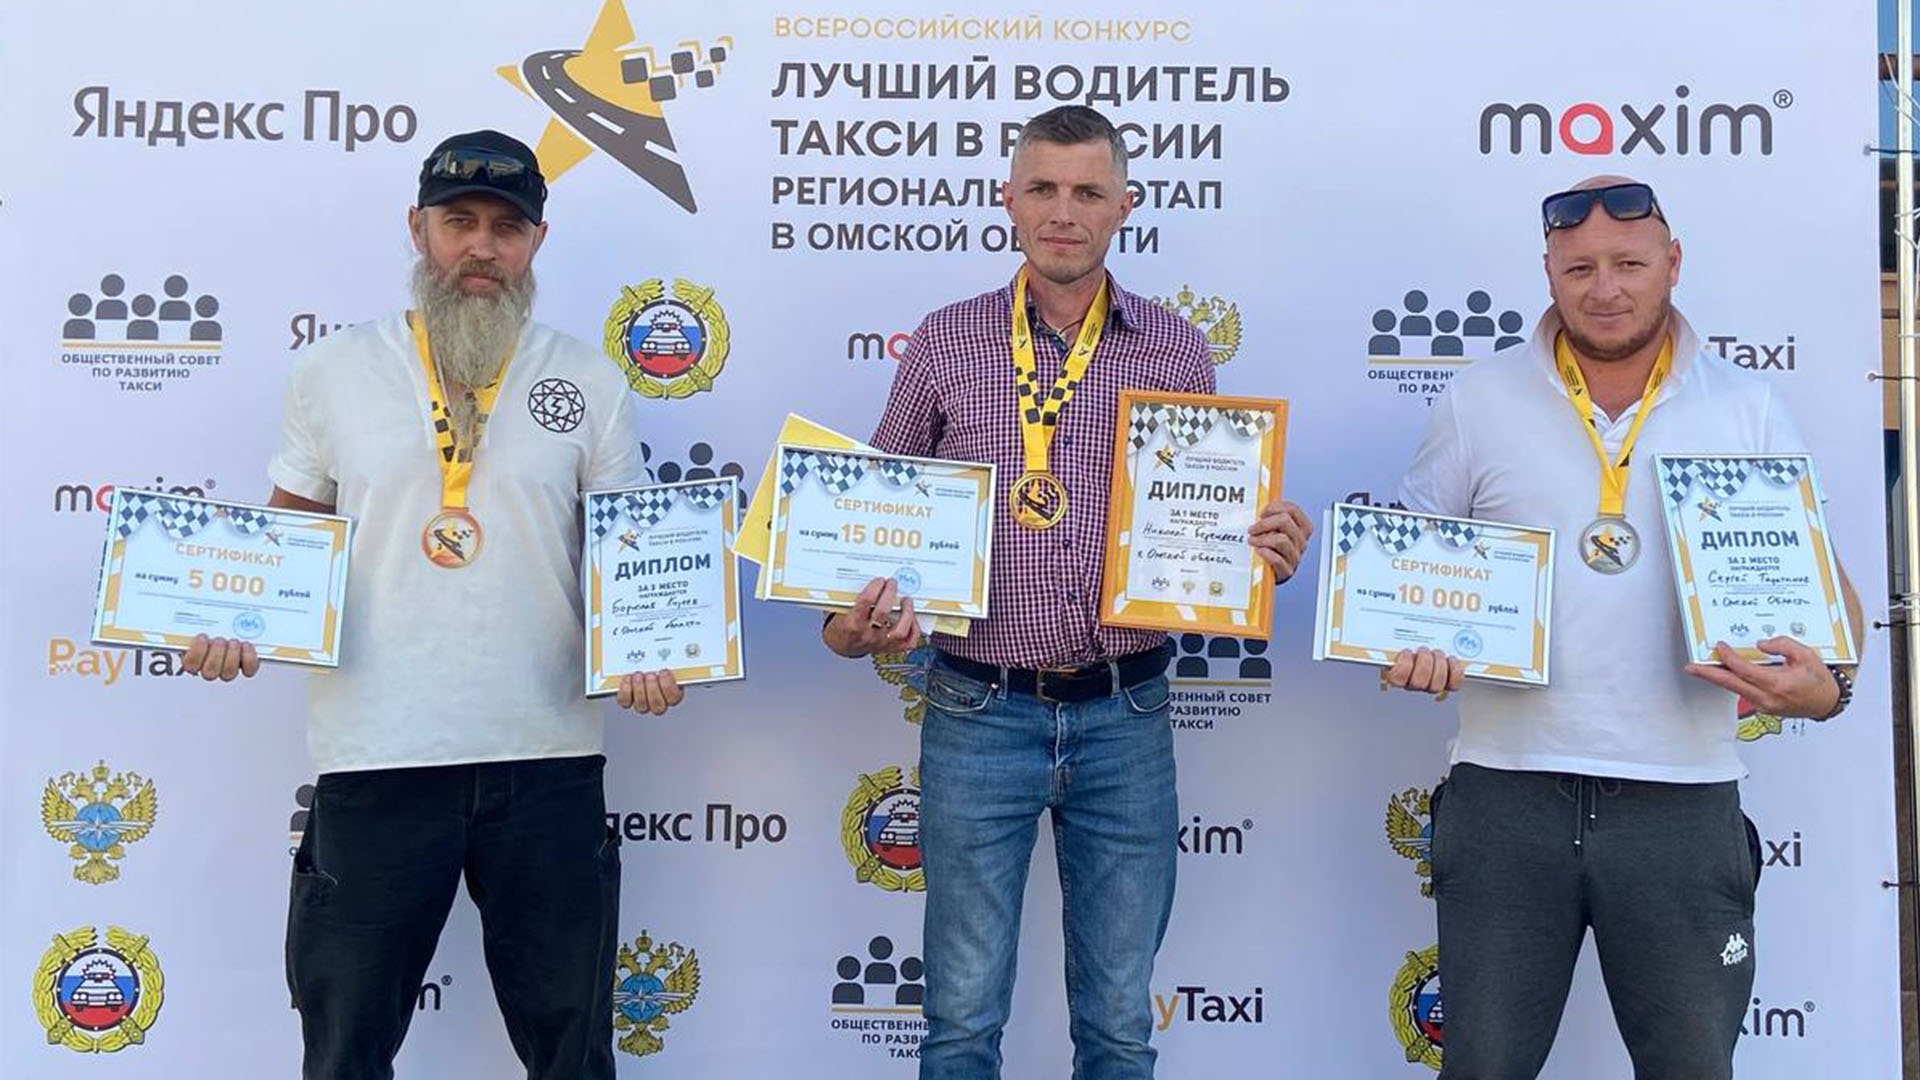 В Омской области лучшим водителем такси стал Николай Берендеев